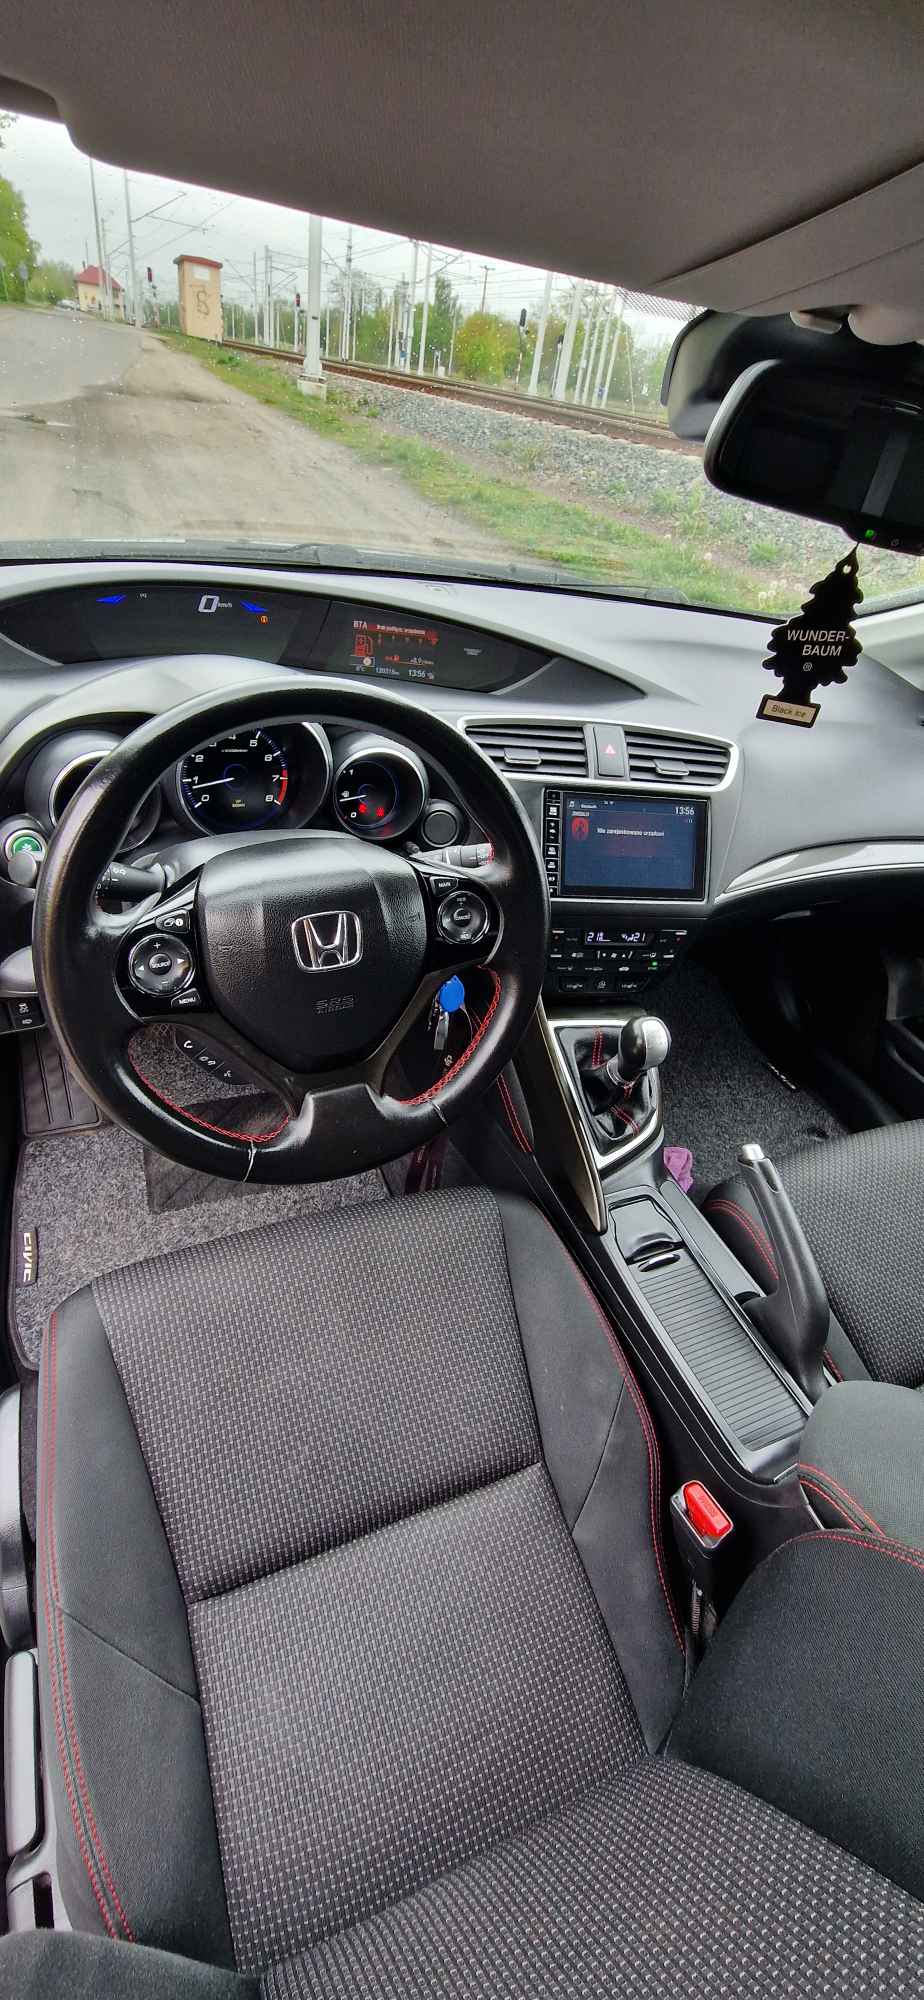 Honda Civic 1.8 beznyna plus gaz Zgierz - zdjęcie 6